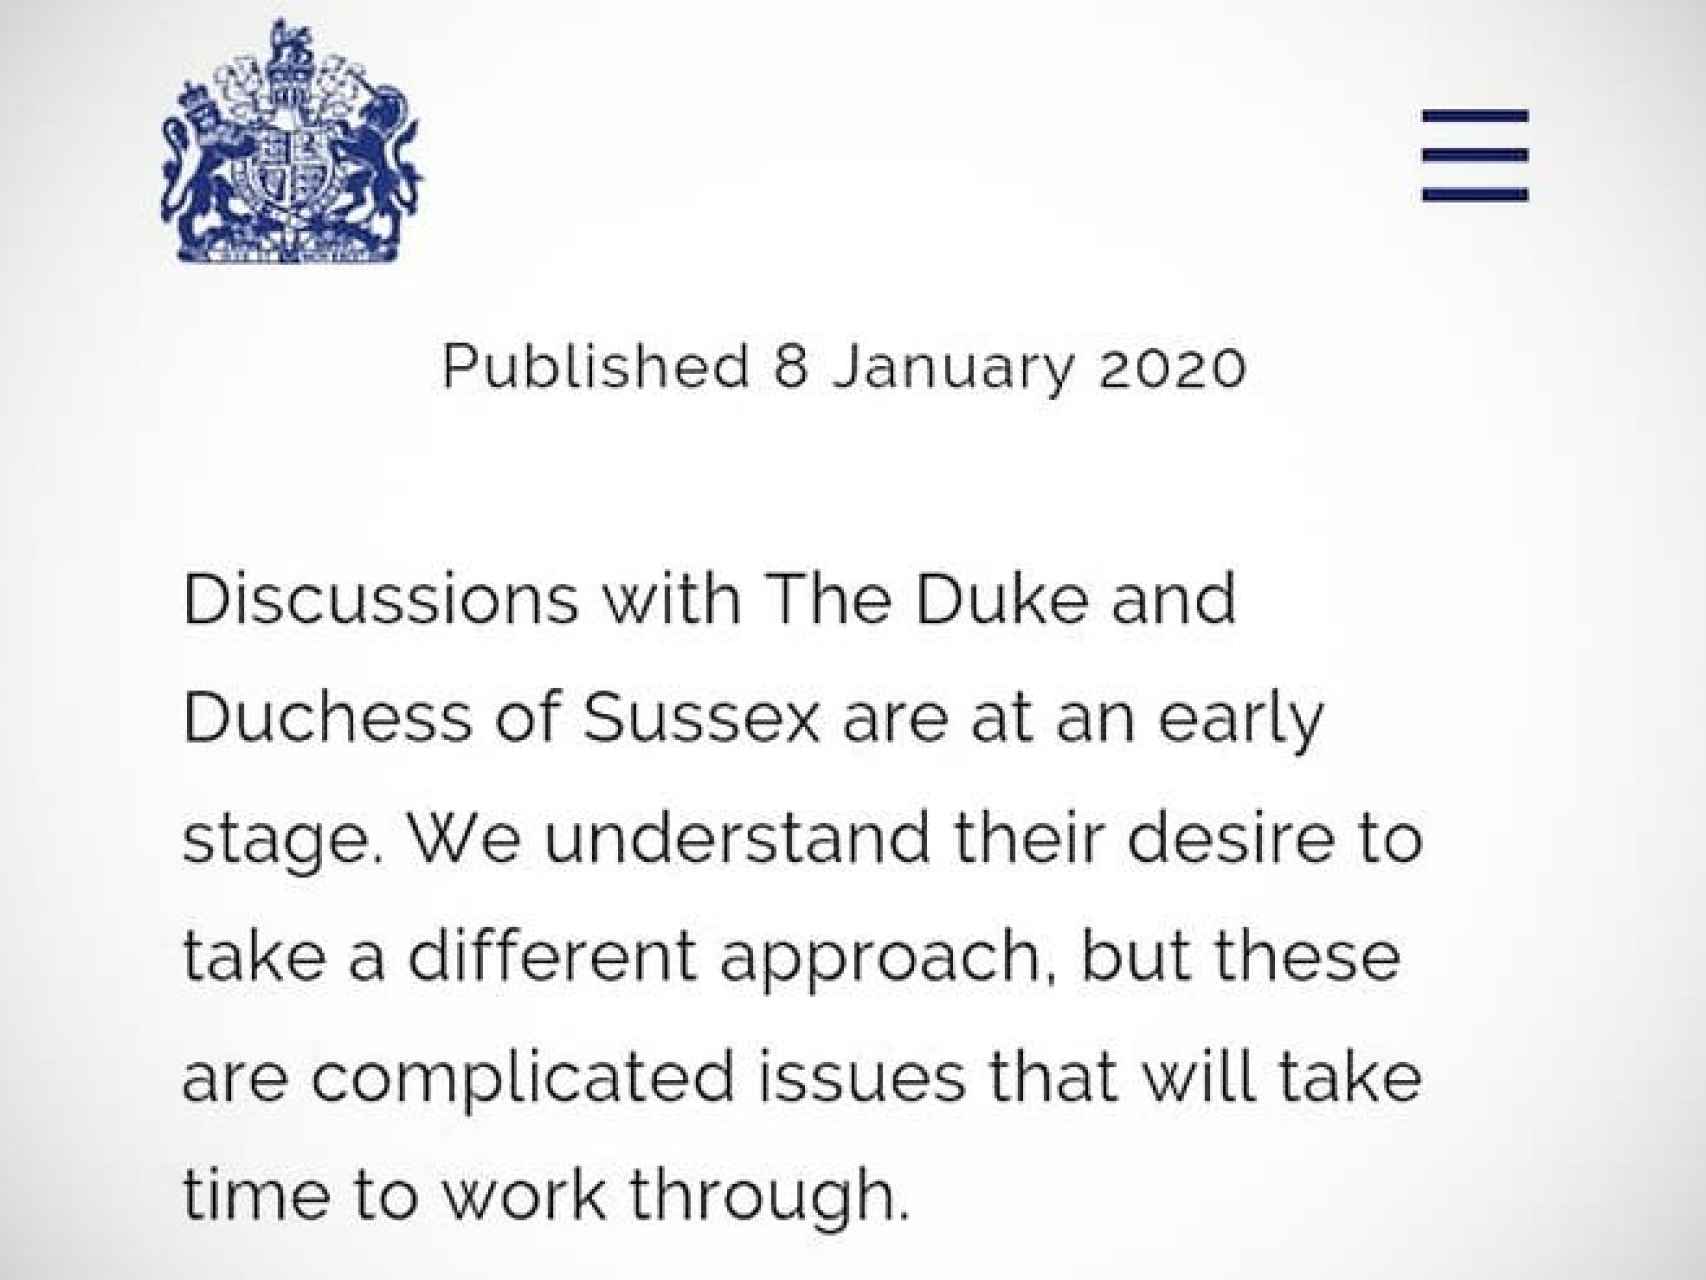 Comunicado oficial de la reina Isabel II de Inglaterra.